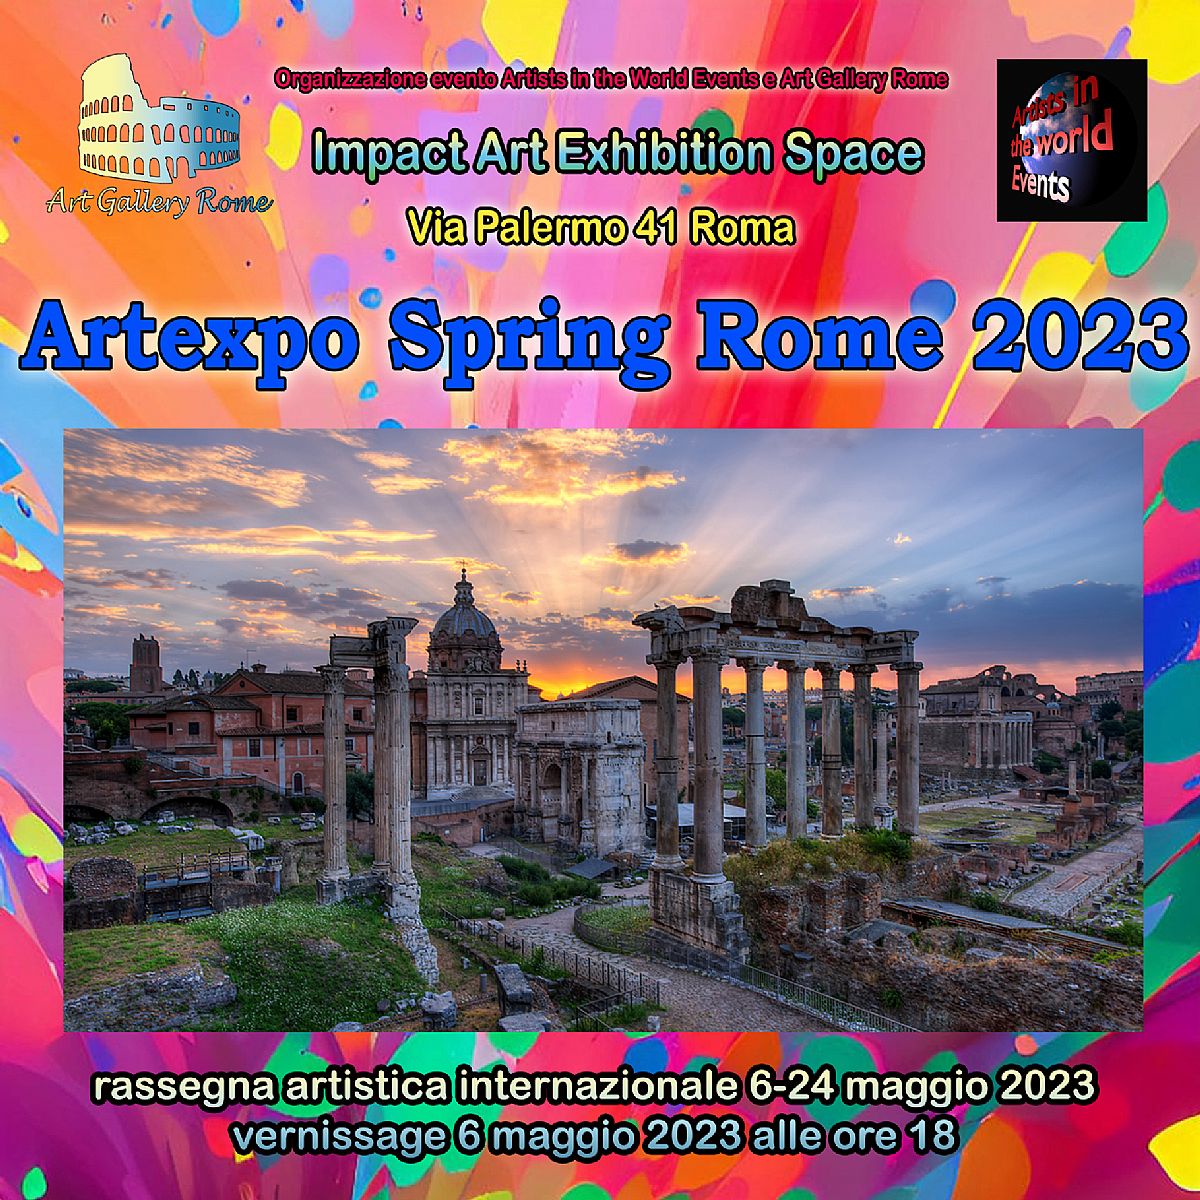 Artexpo Spring Rome 2023